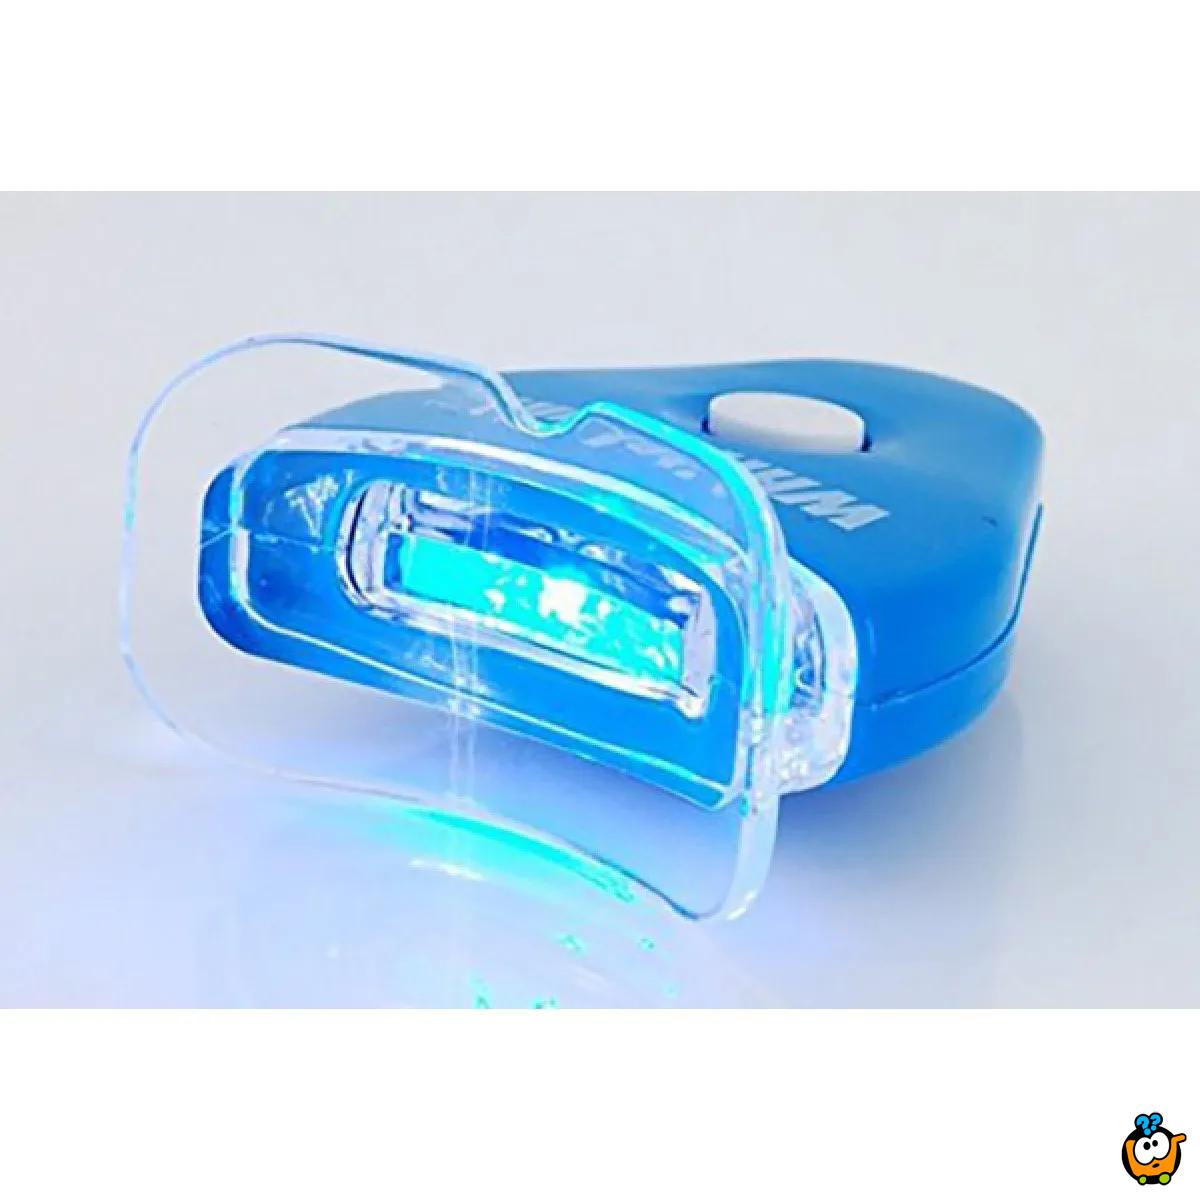 White Light aparat za izbeljivanje zuba sa LED svetlom